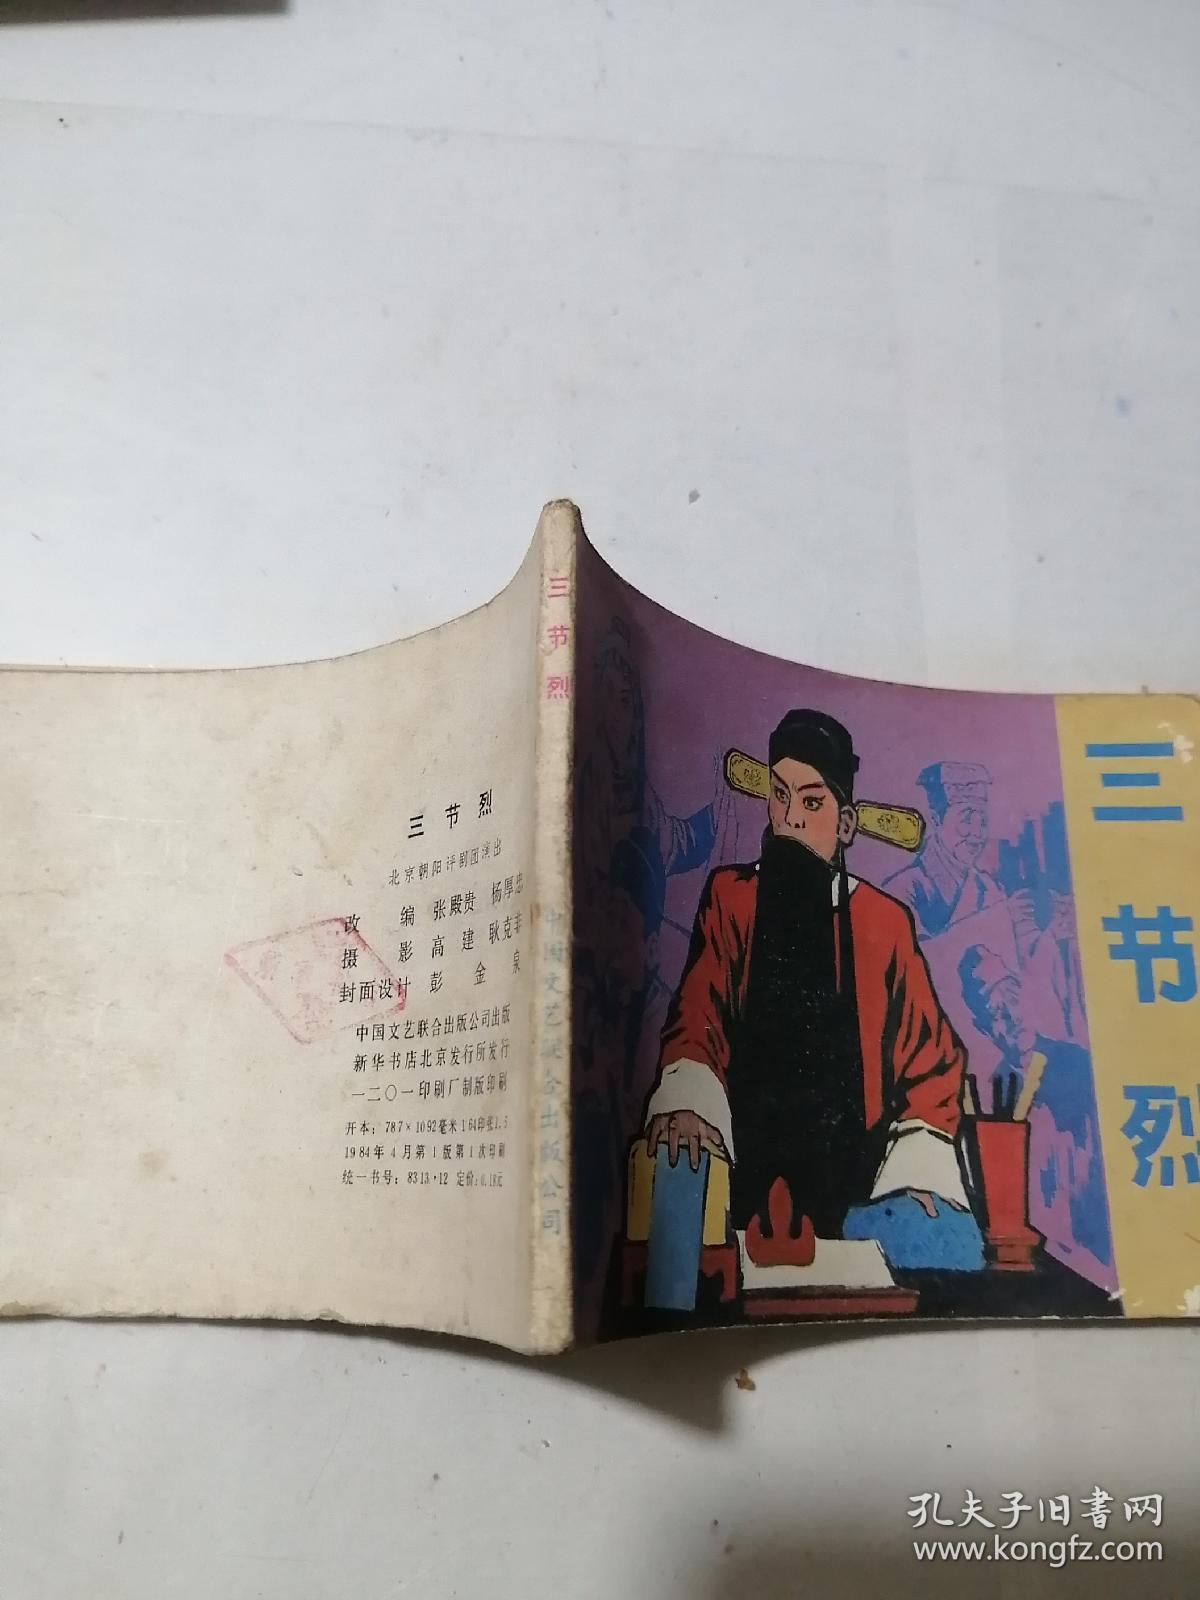 连环画   三节烈     （64开本，中国文艺联合出版公司出版，84年一版一印刷）   内页干净。扉页有写字，